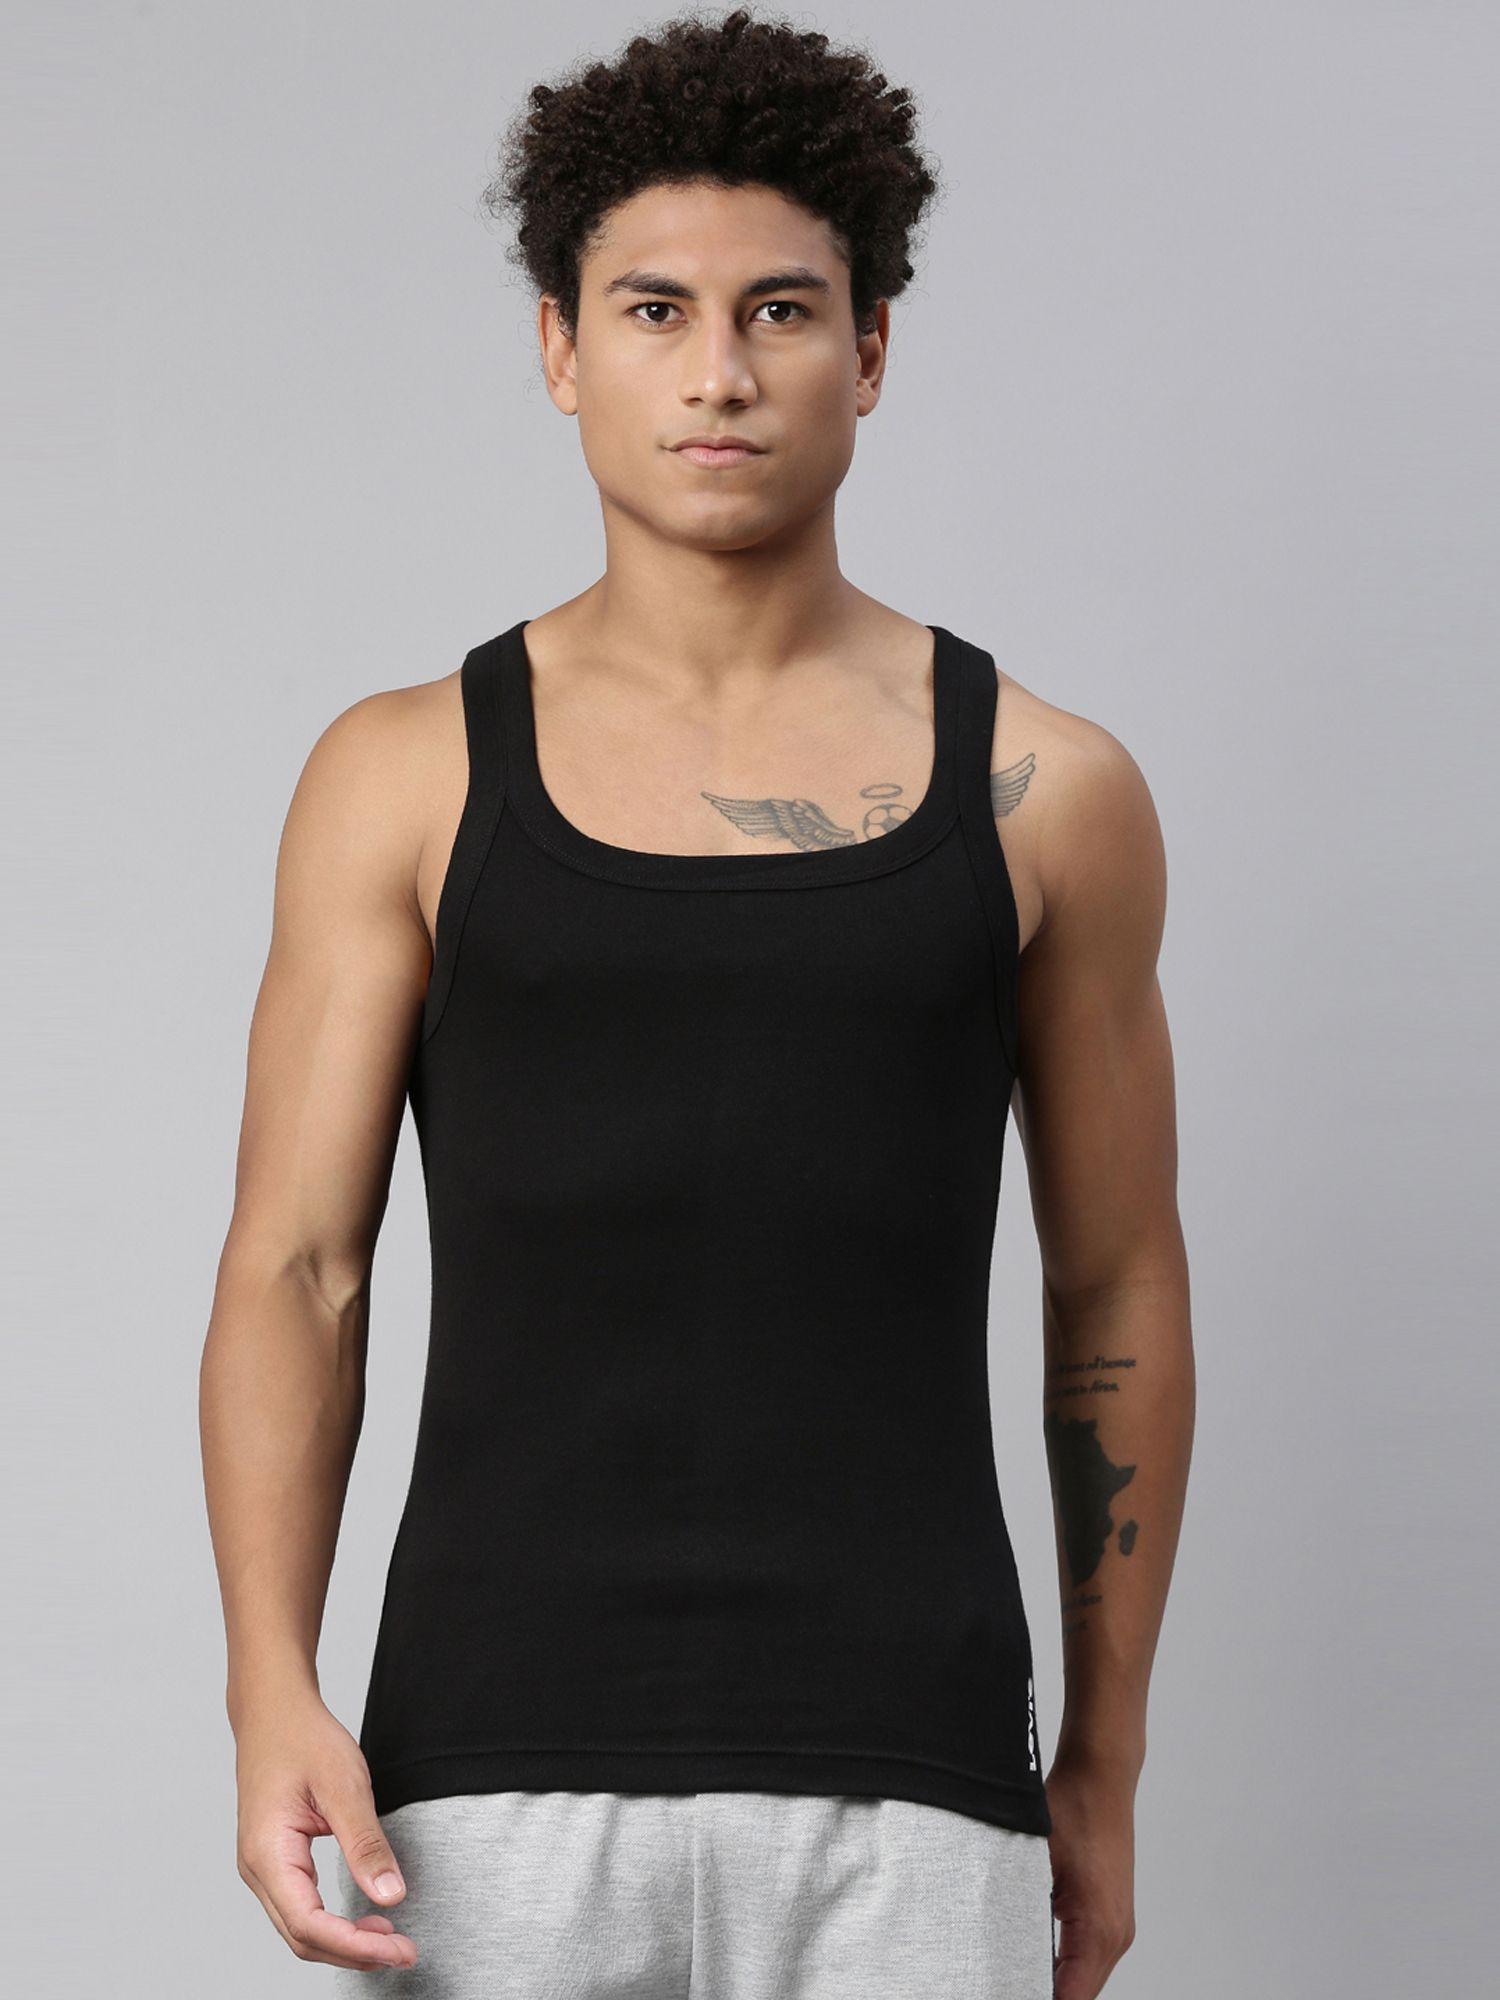 015 sports vest for men with branding comfort & smartskin technology - black